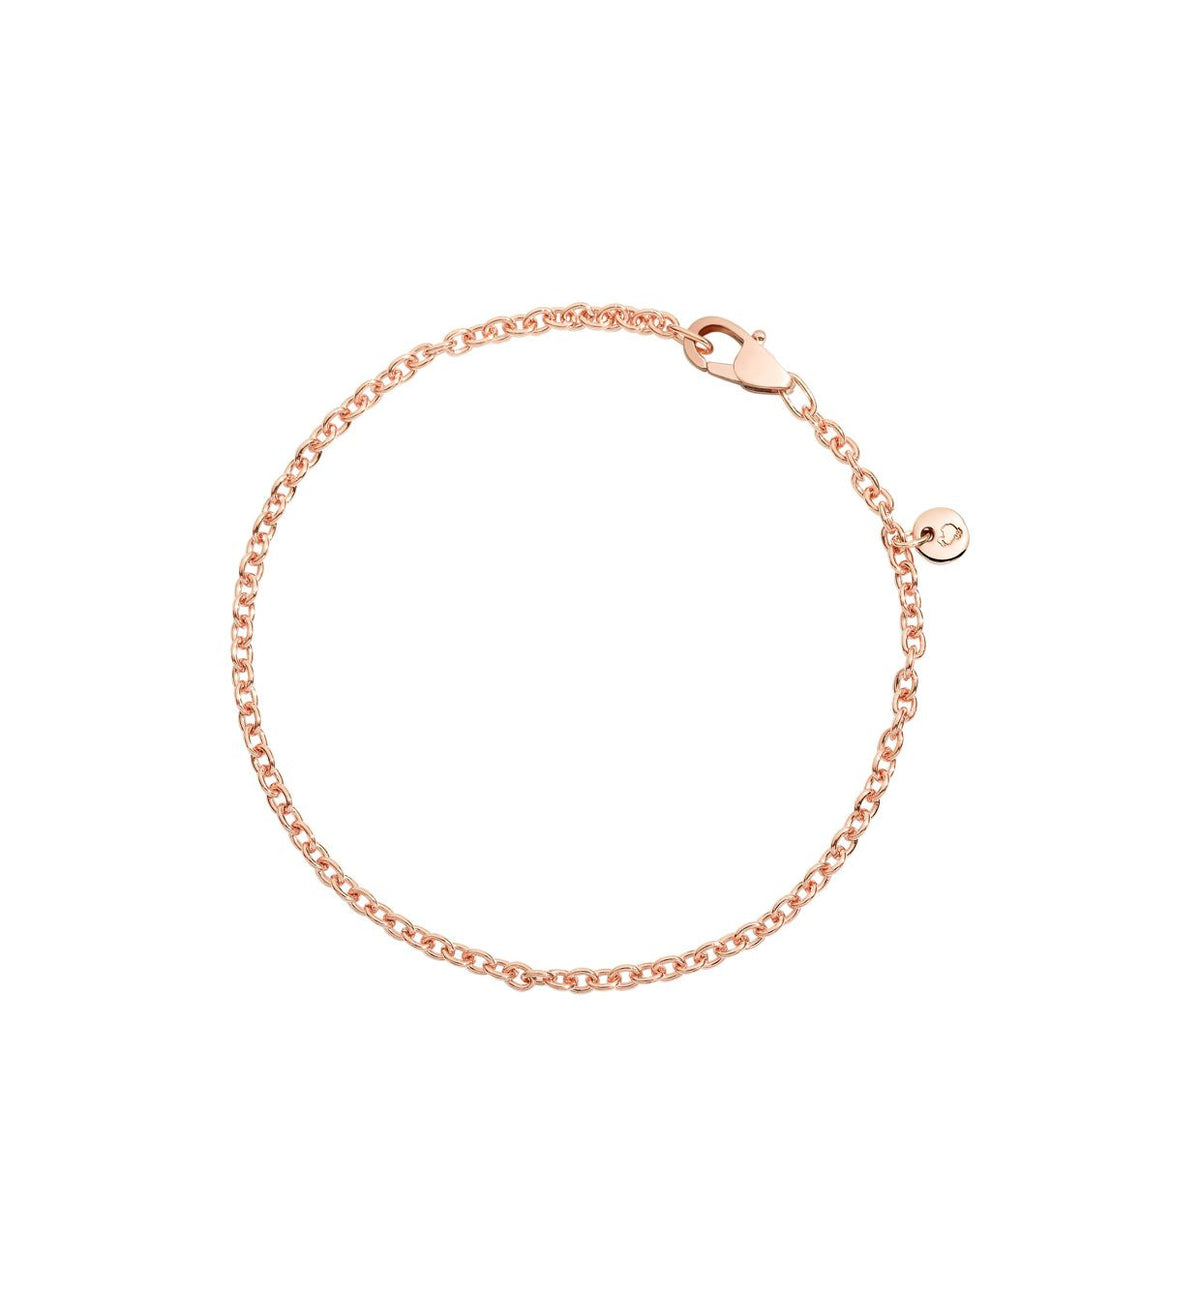 DoDo Chain Bracelet in 9k Rose Gold - Orsini Jewellers NZ